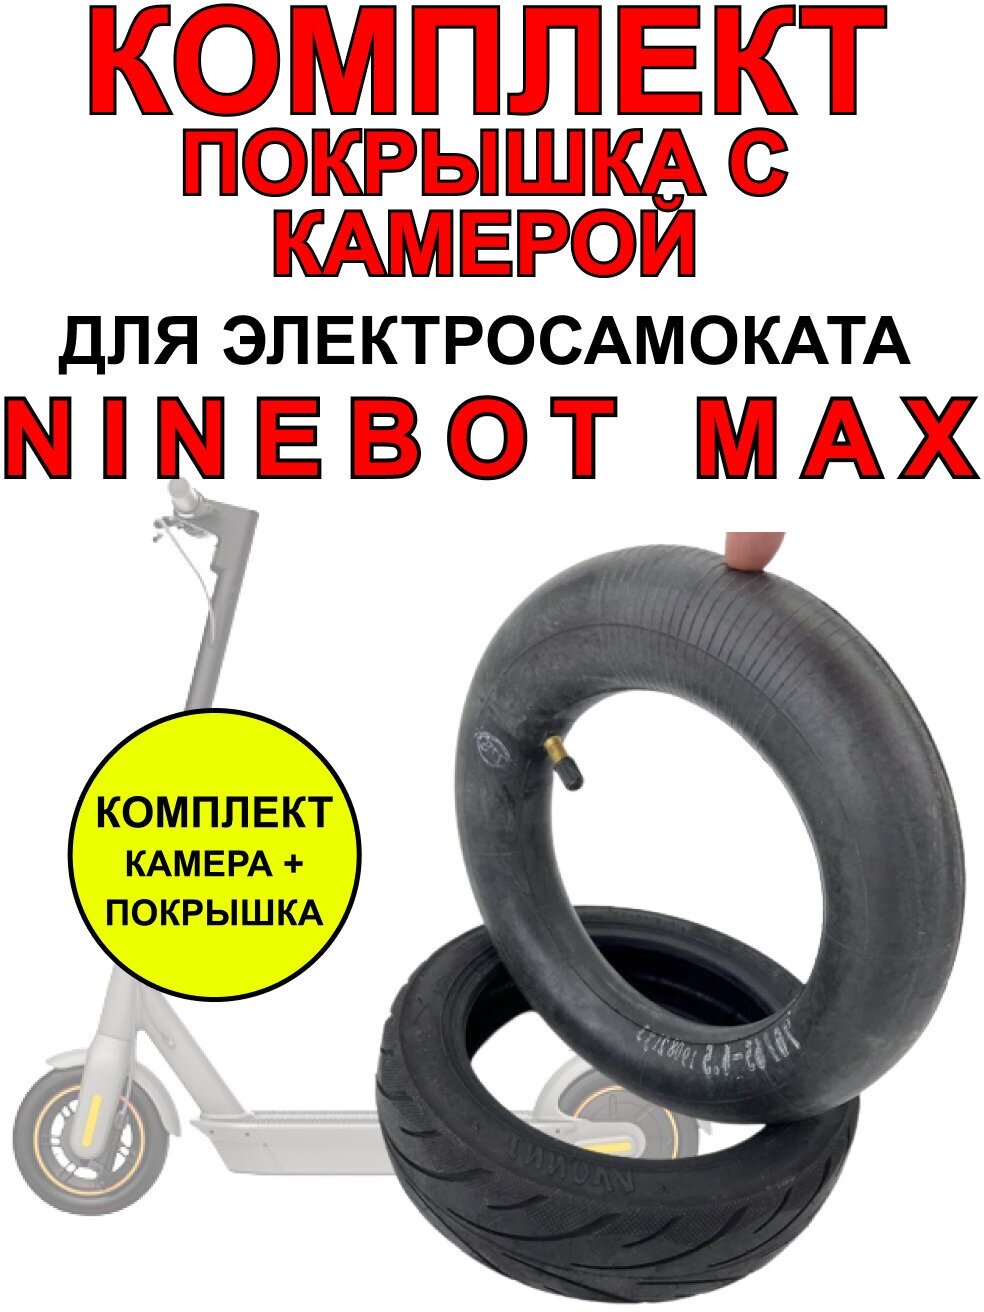 Усиленная покрышка + камера для электросамоката Ninebot MAX.